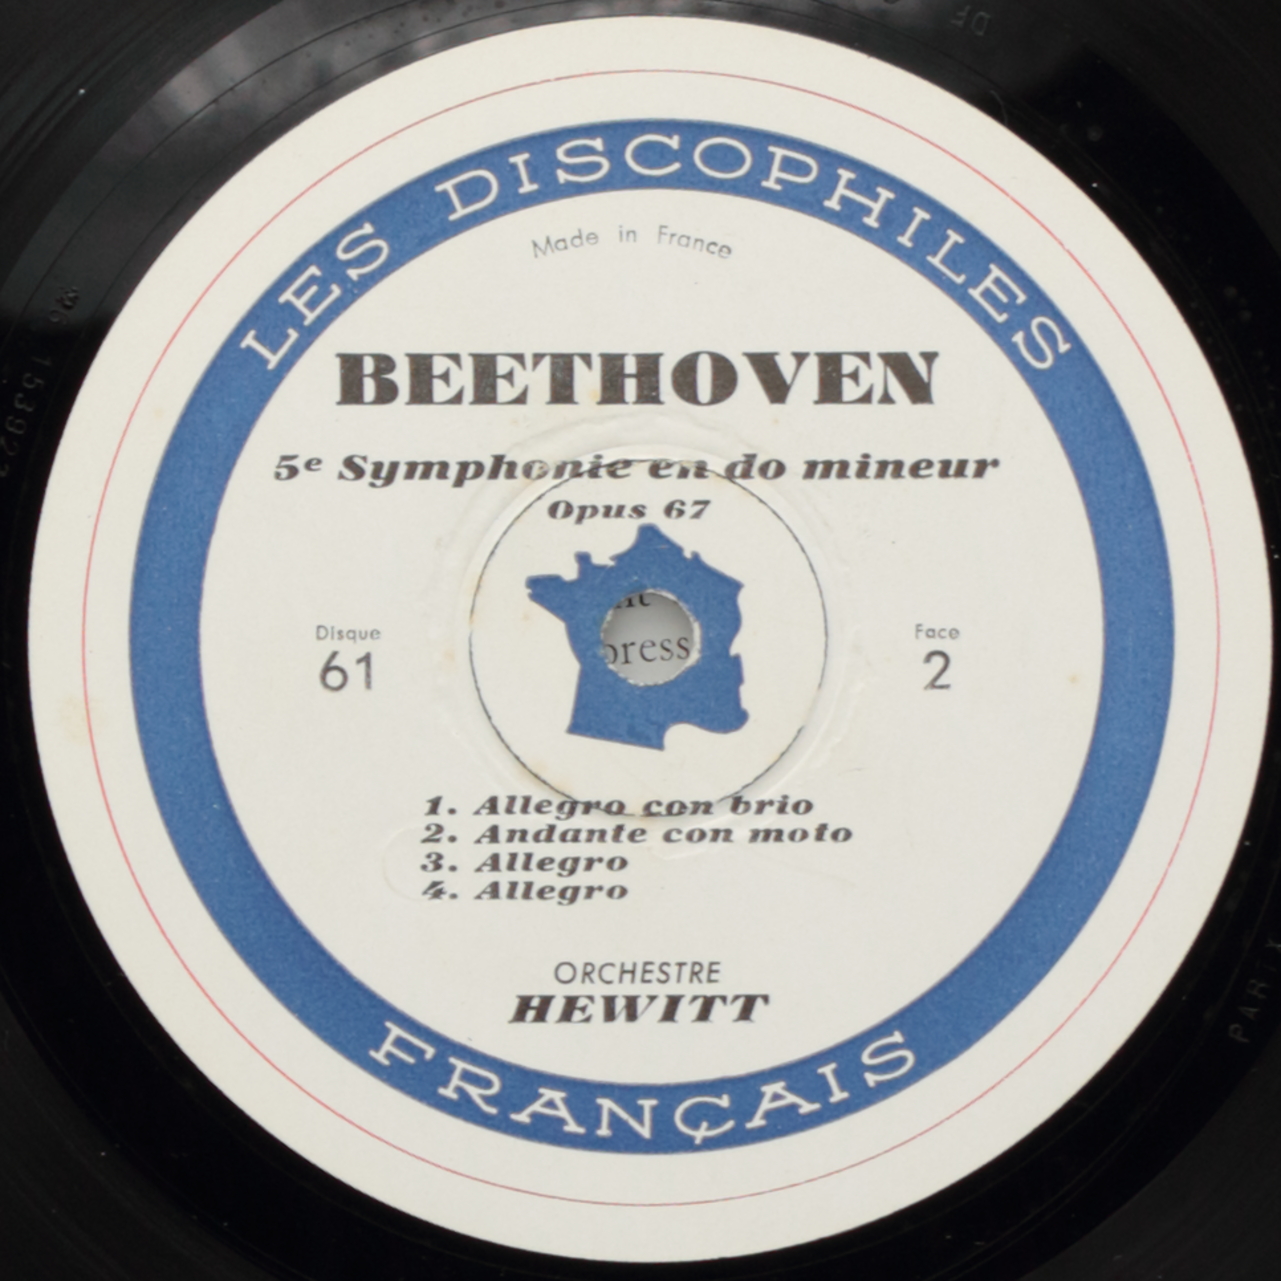 Beethoven: Les symphonies de Beethoven - 4ème symphonie en si bémol majeur; 5ème symphonie en do 